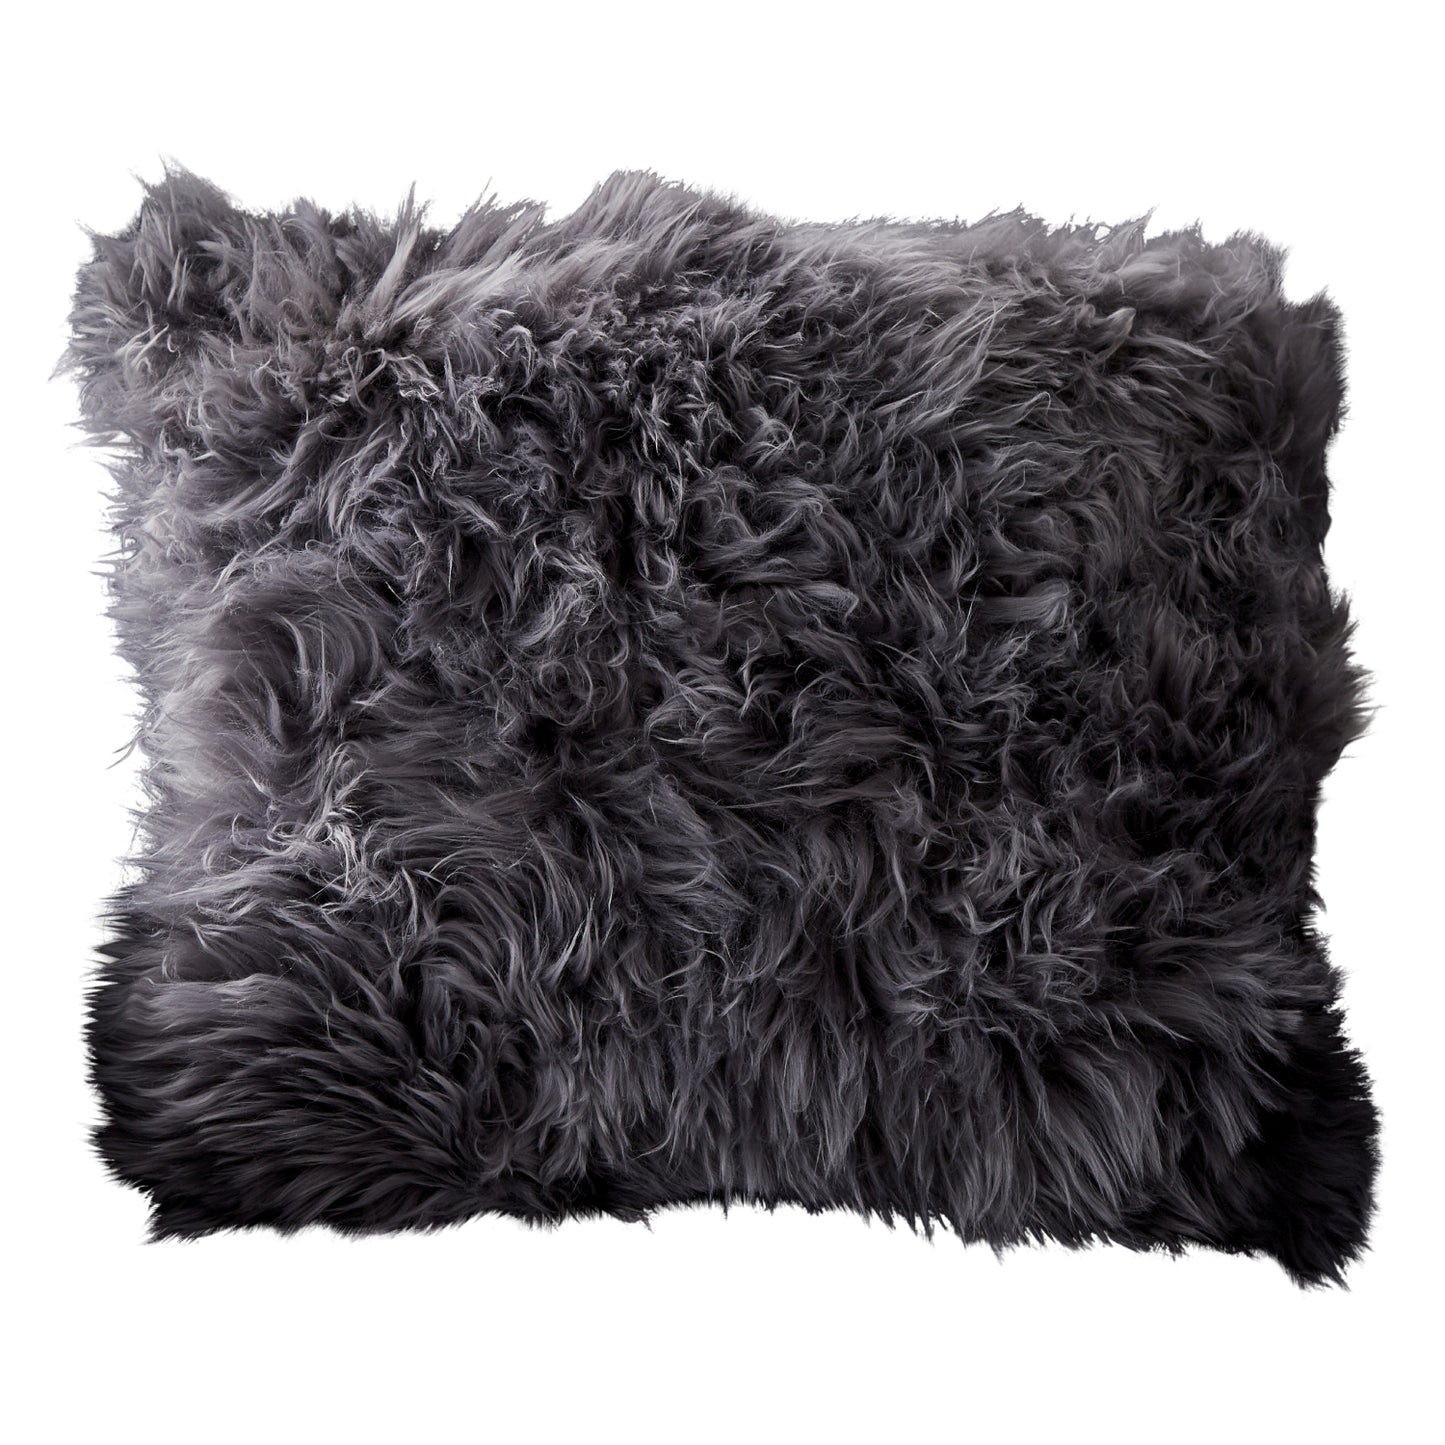 Sheepskin cushion grey by Native